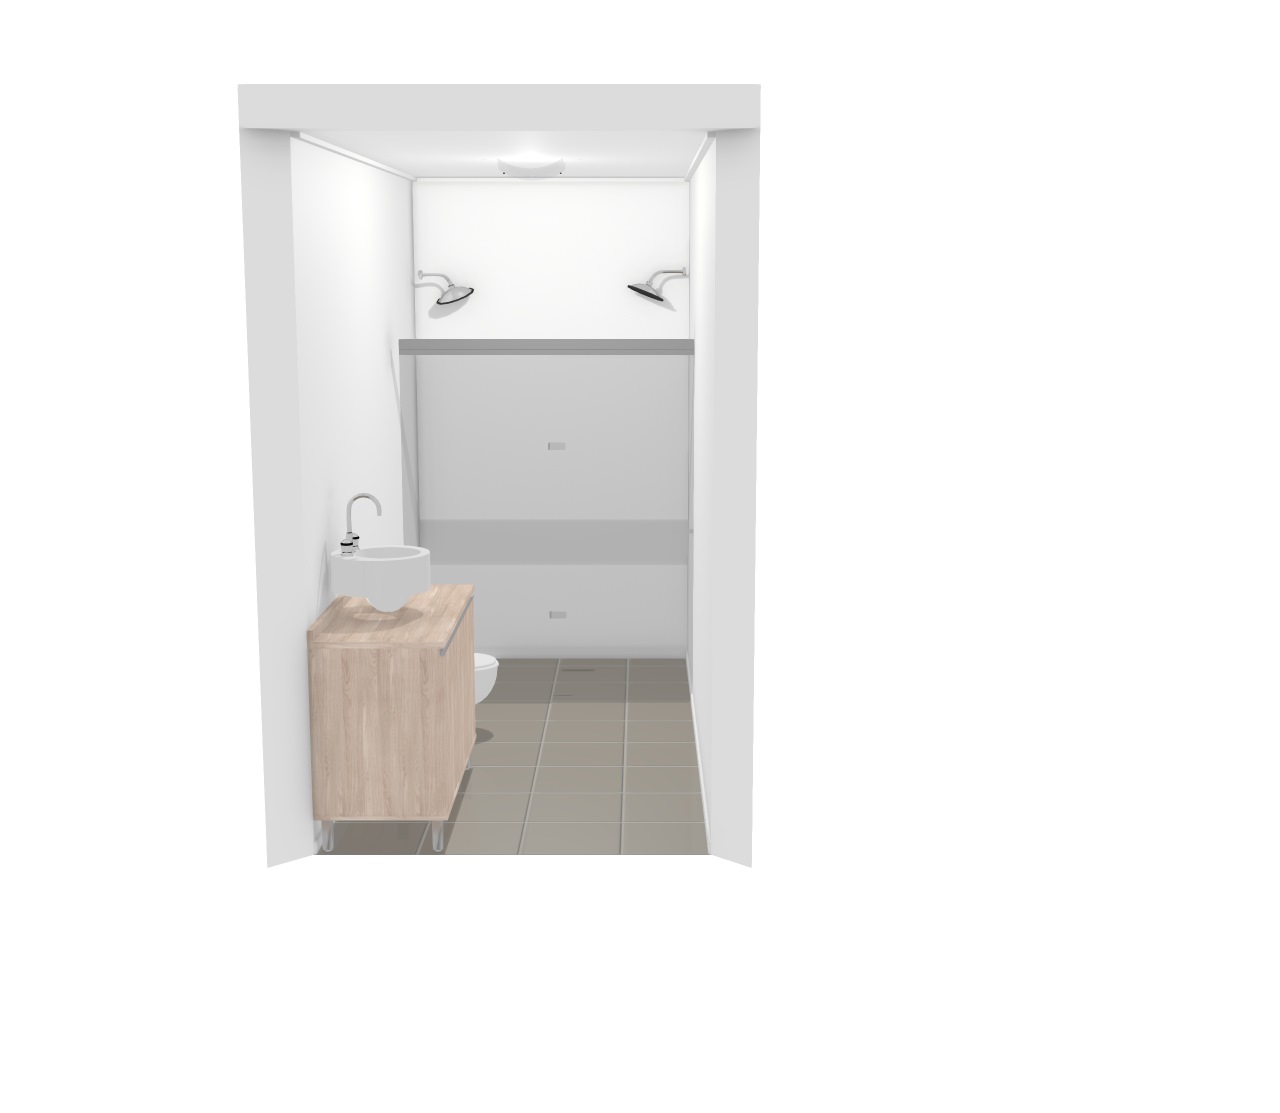 banheiro1